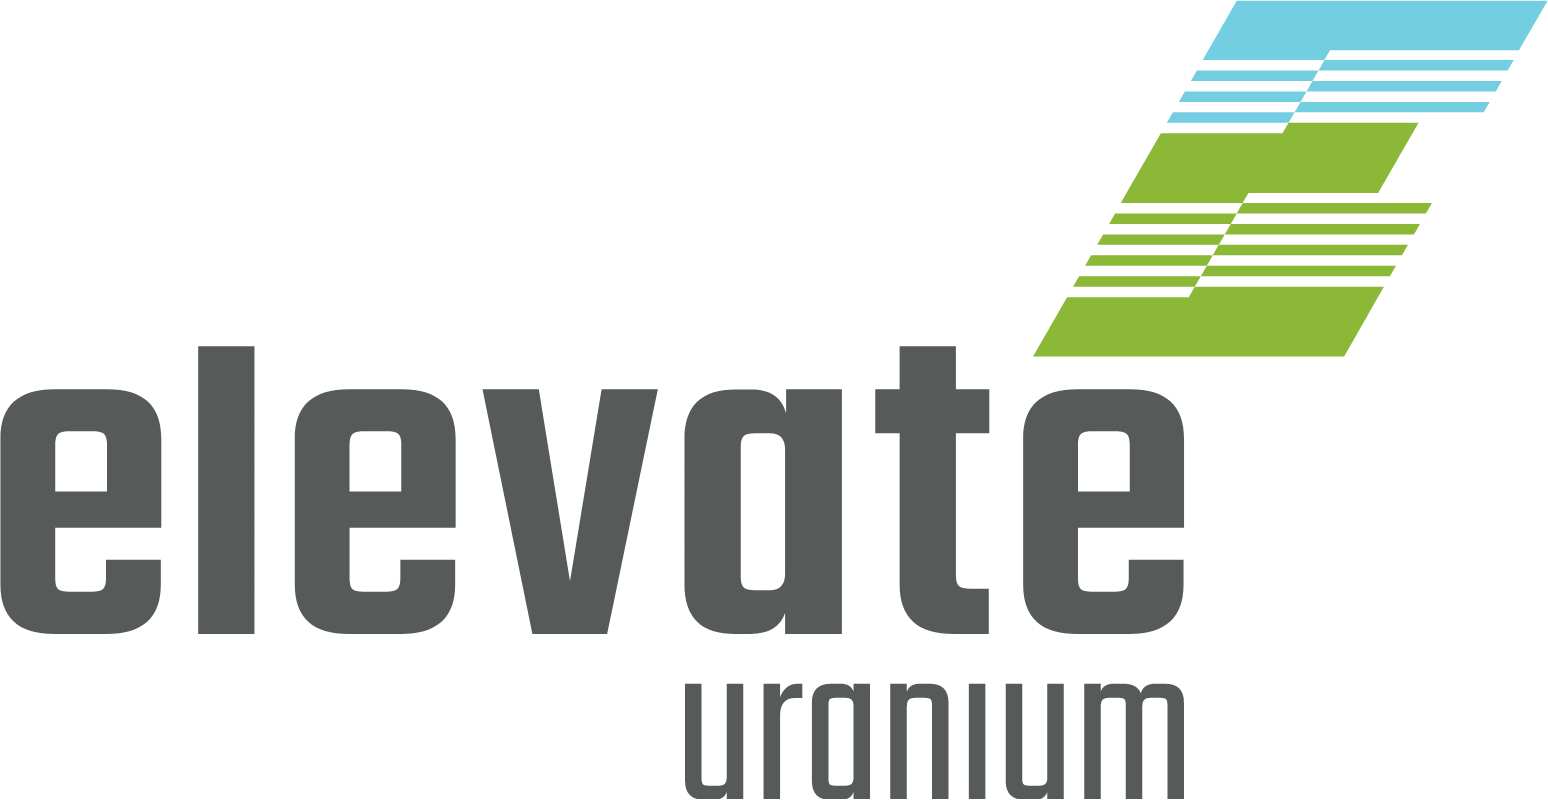 Elevate Uranium logo large (transparent PNG)